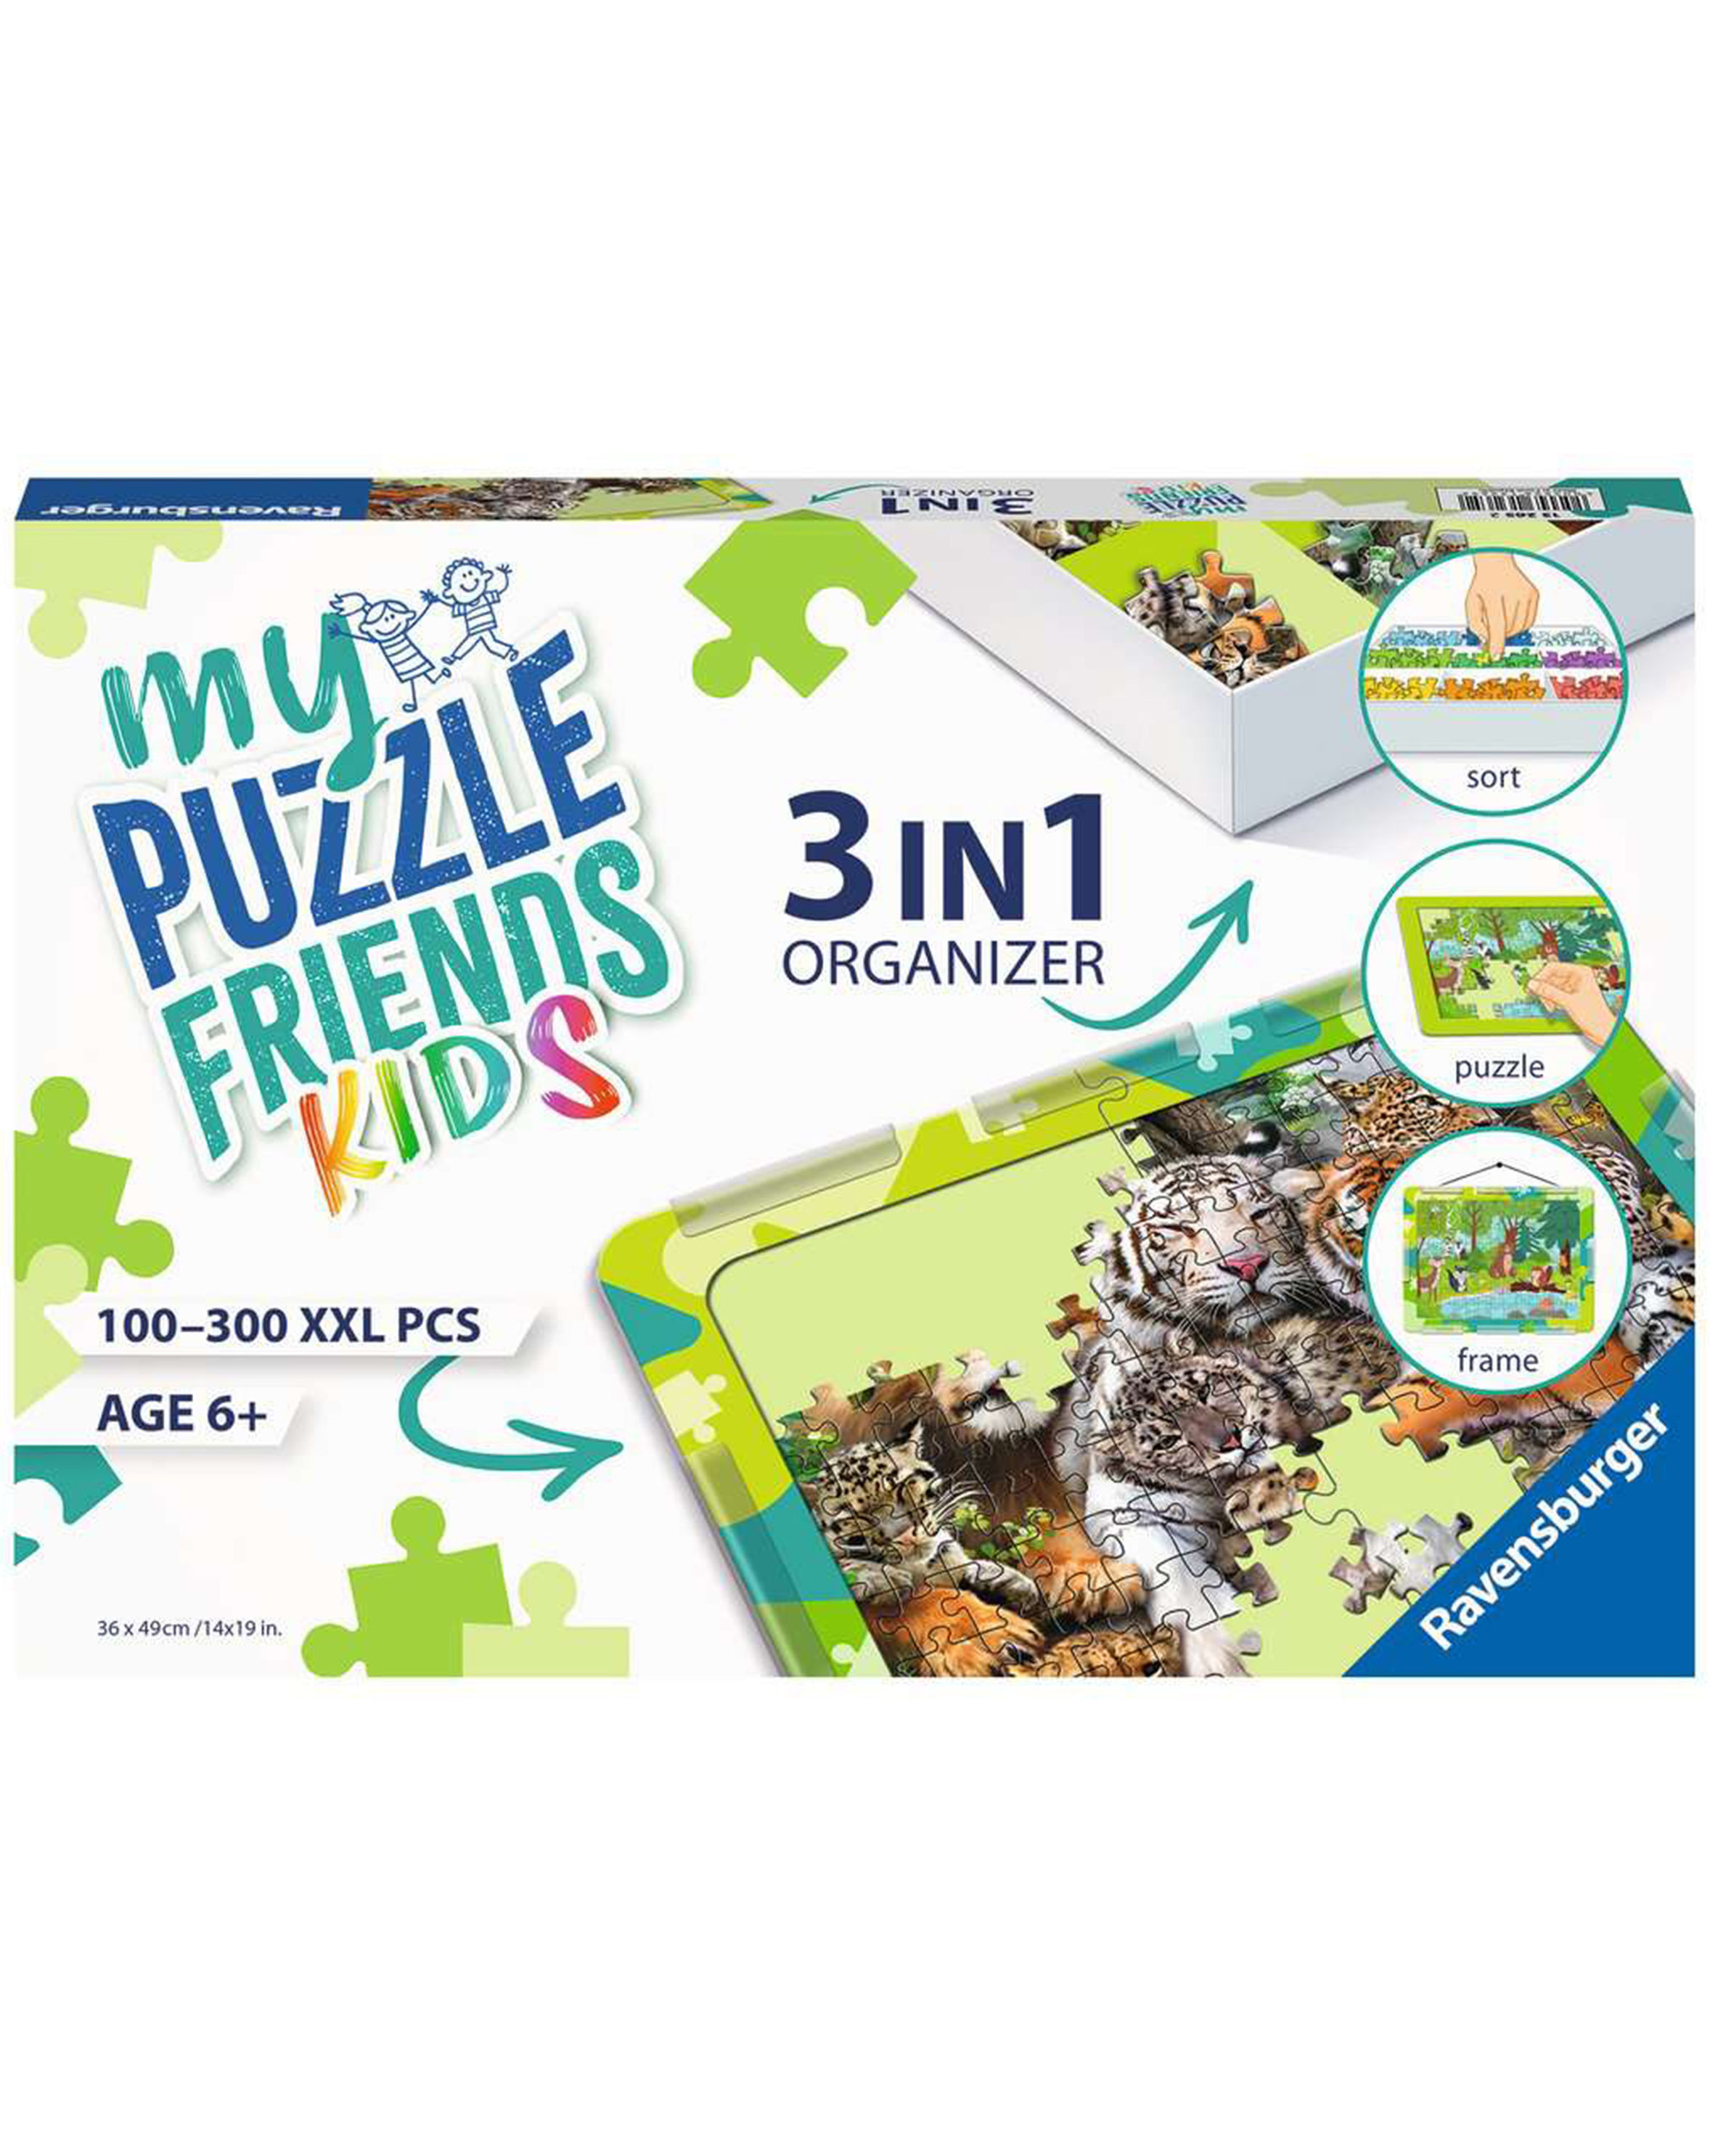 Puzzle-Aufbewahrung 3IN1 ORGANIZER für 100 - 300 XXL Teile in grün |  Weltbild.de